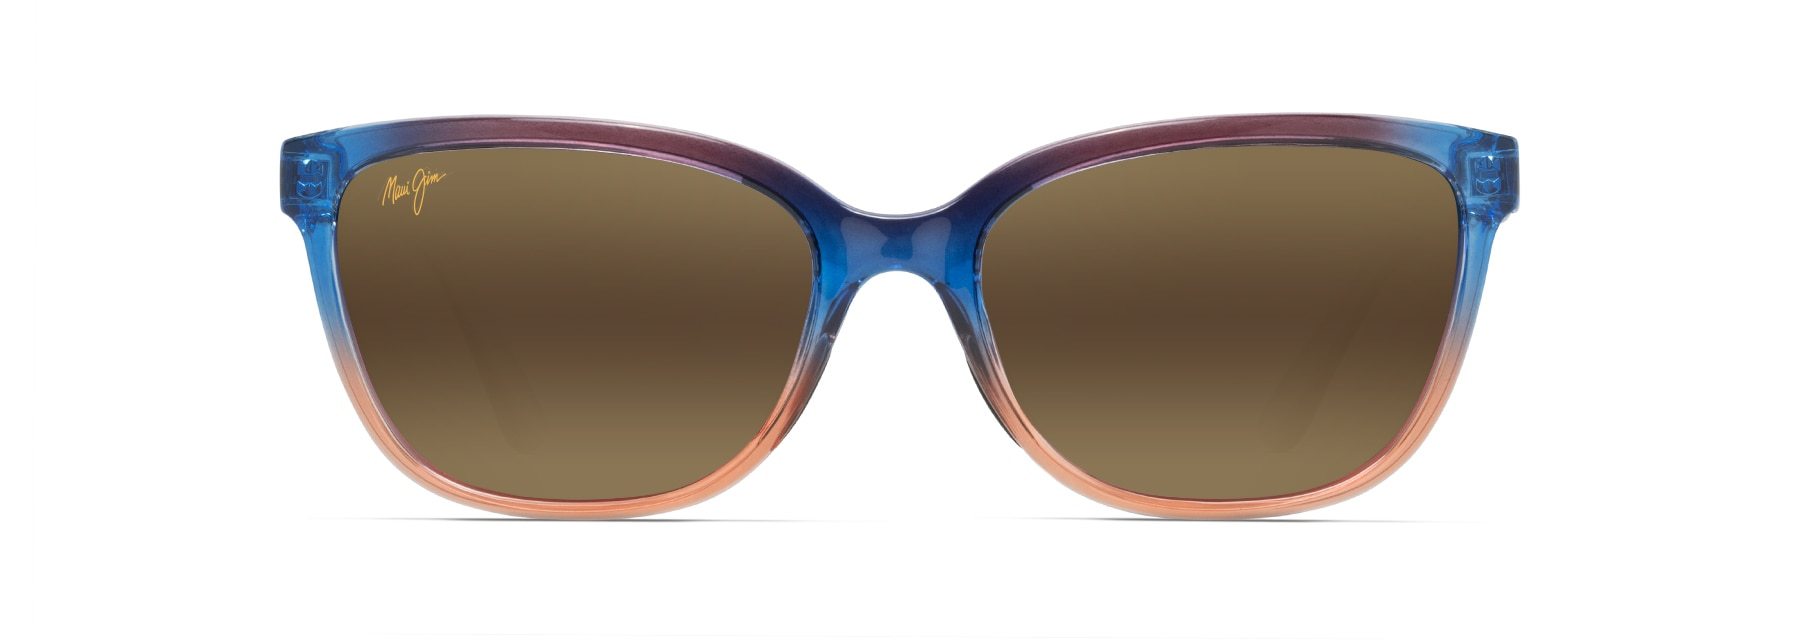 MyMaui Honi MM758-020 Sunglasses